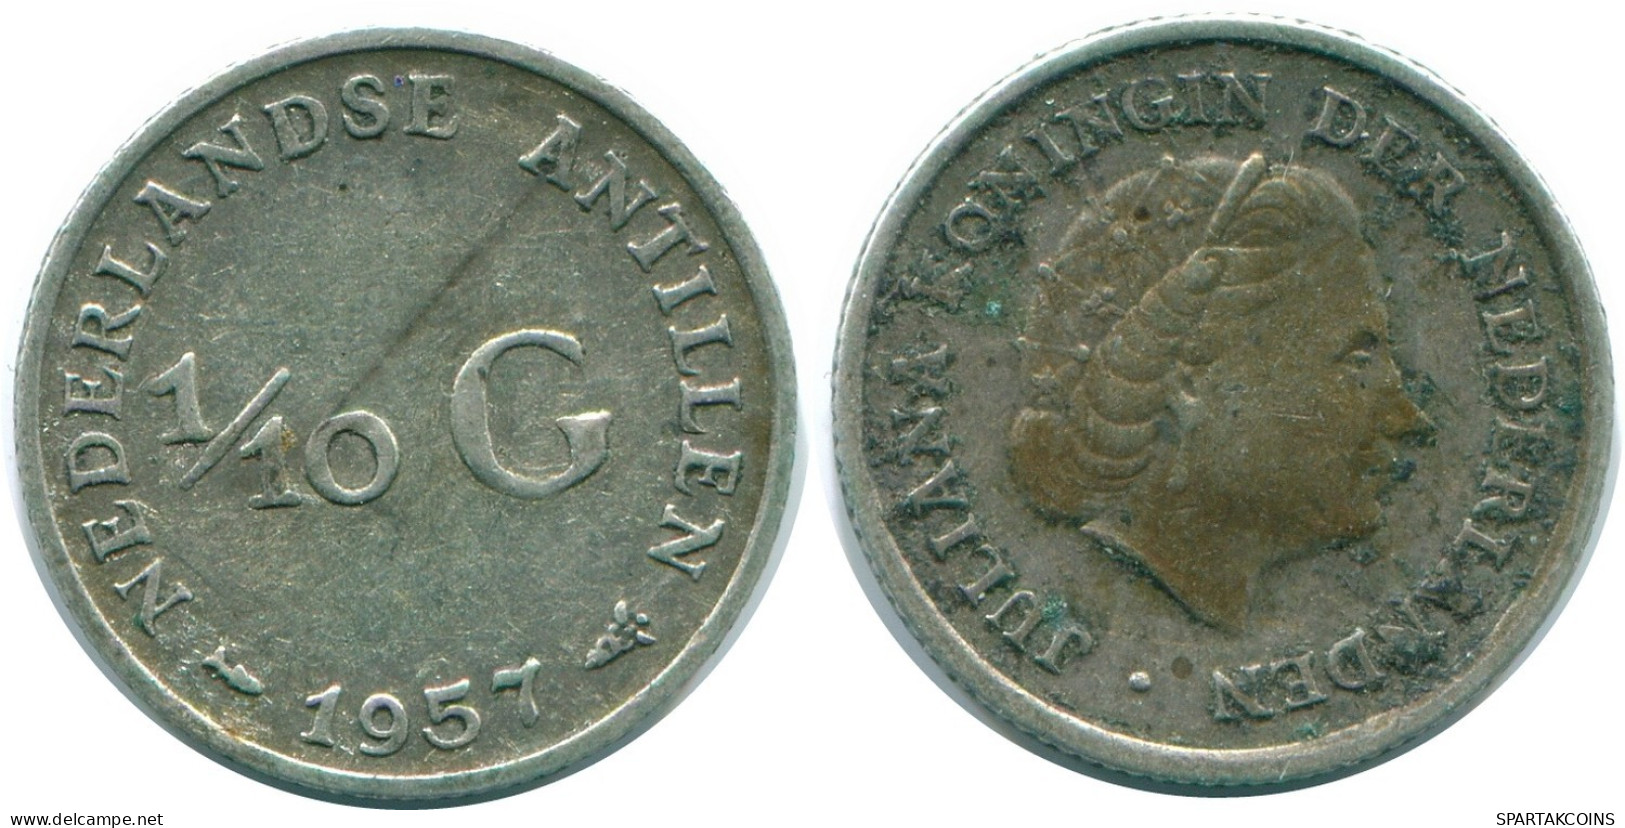 1/10 GULDEN 1957 NIEDERLÄNDISCHE ANTILLEN SILBER Koloniale Münze #NL12180.3.D.A - Nederlandse Antillen